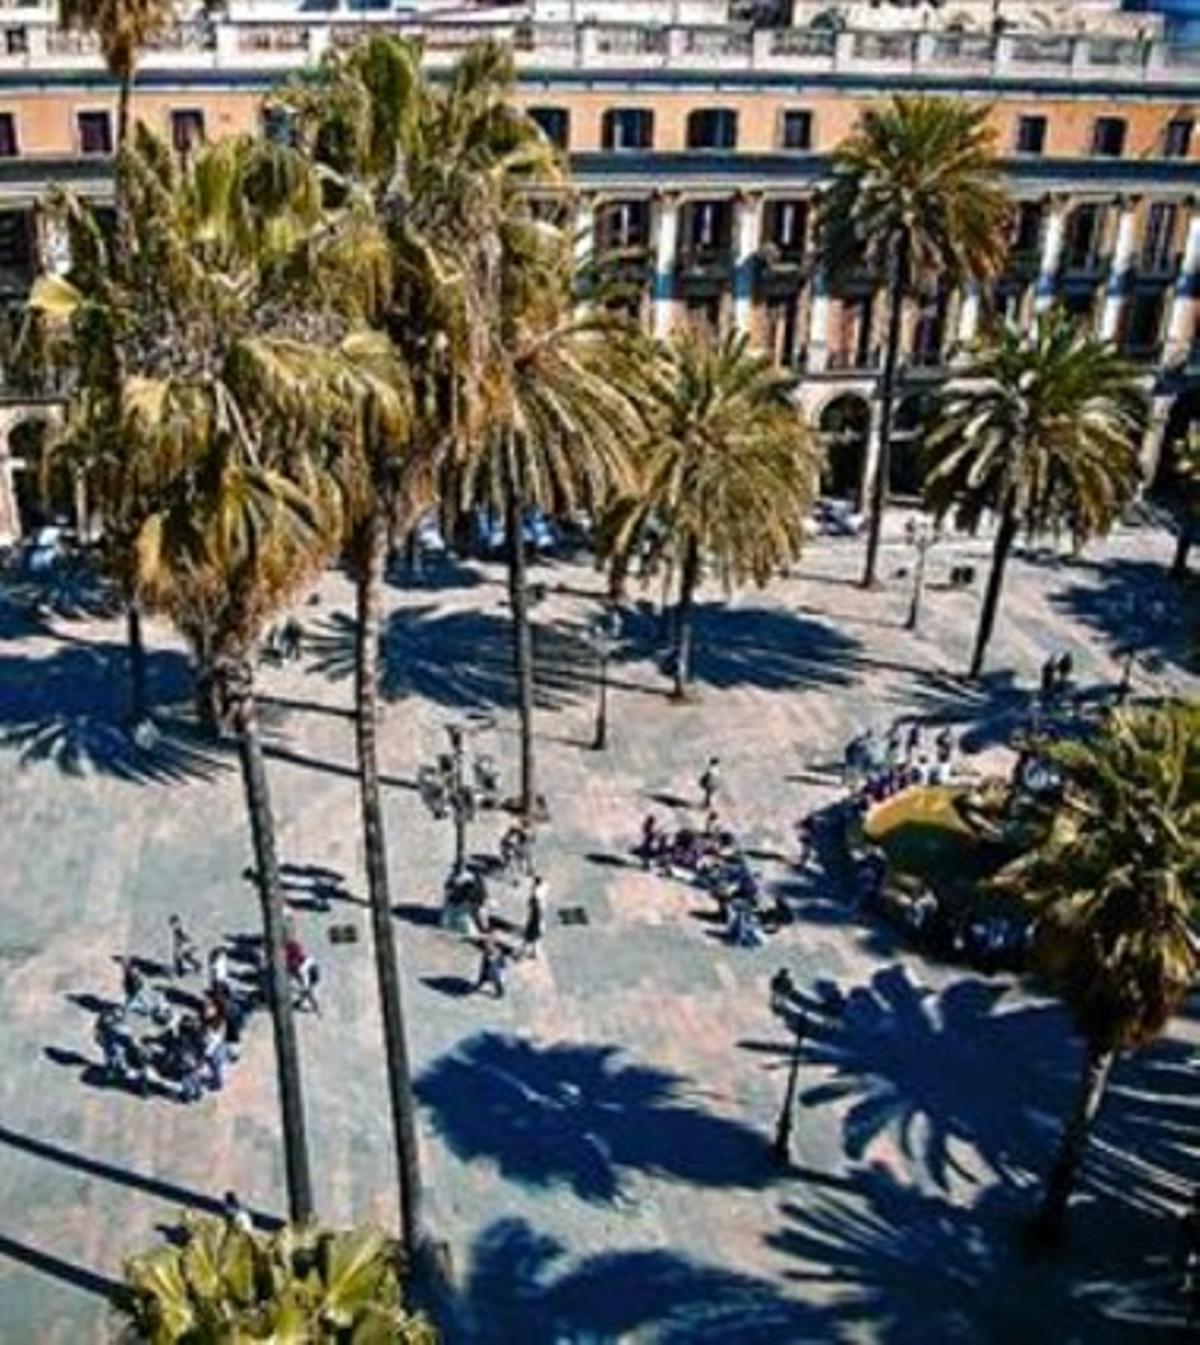 La plaza Reial vista desde la terraza del Hotel DO, el miércoles.